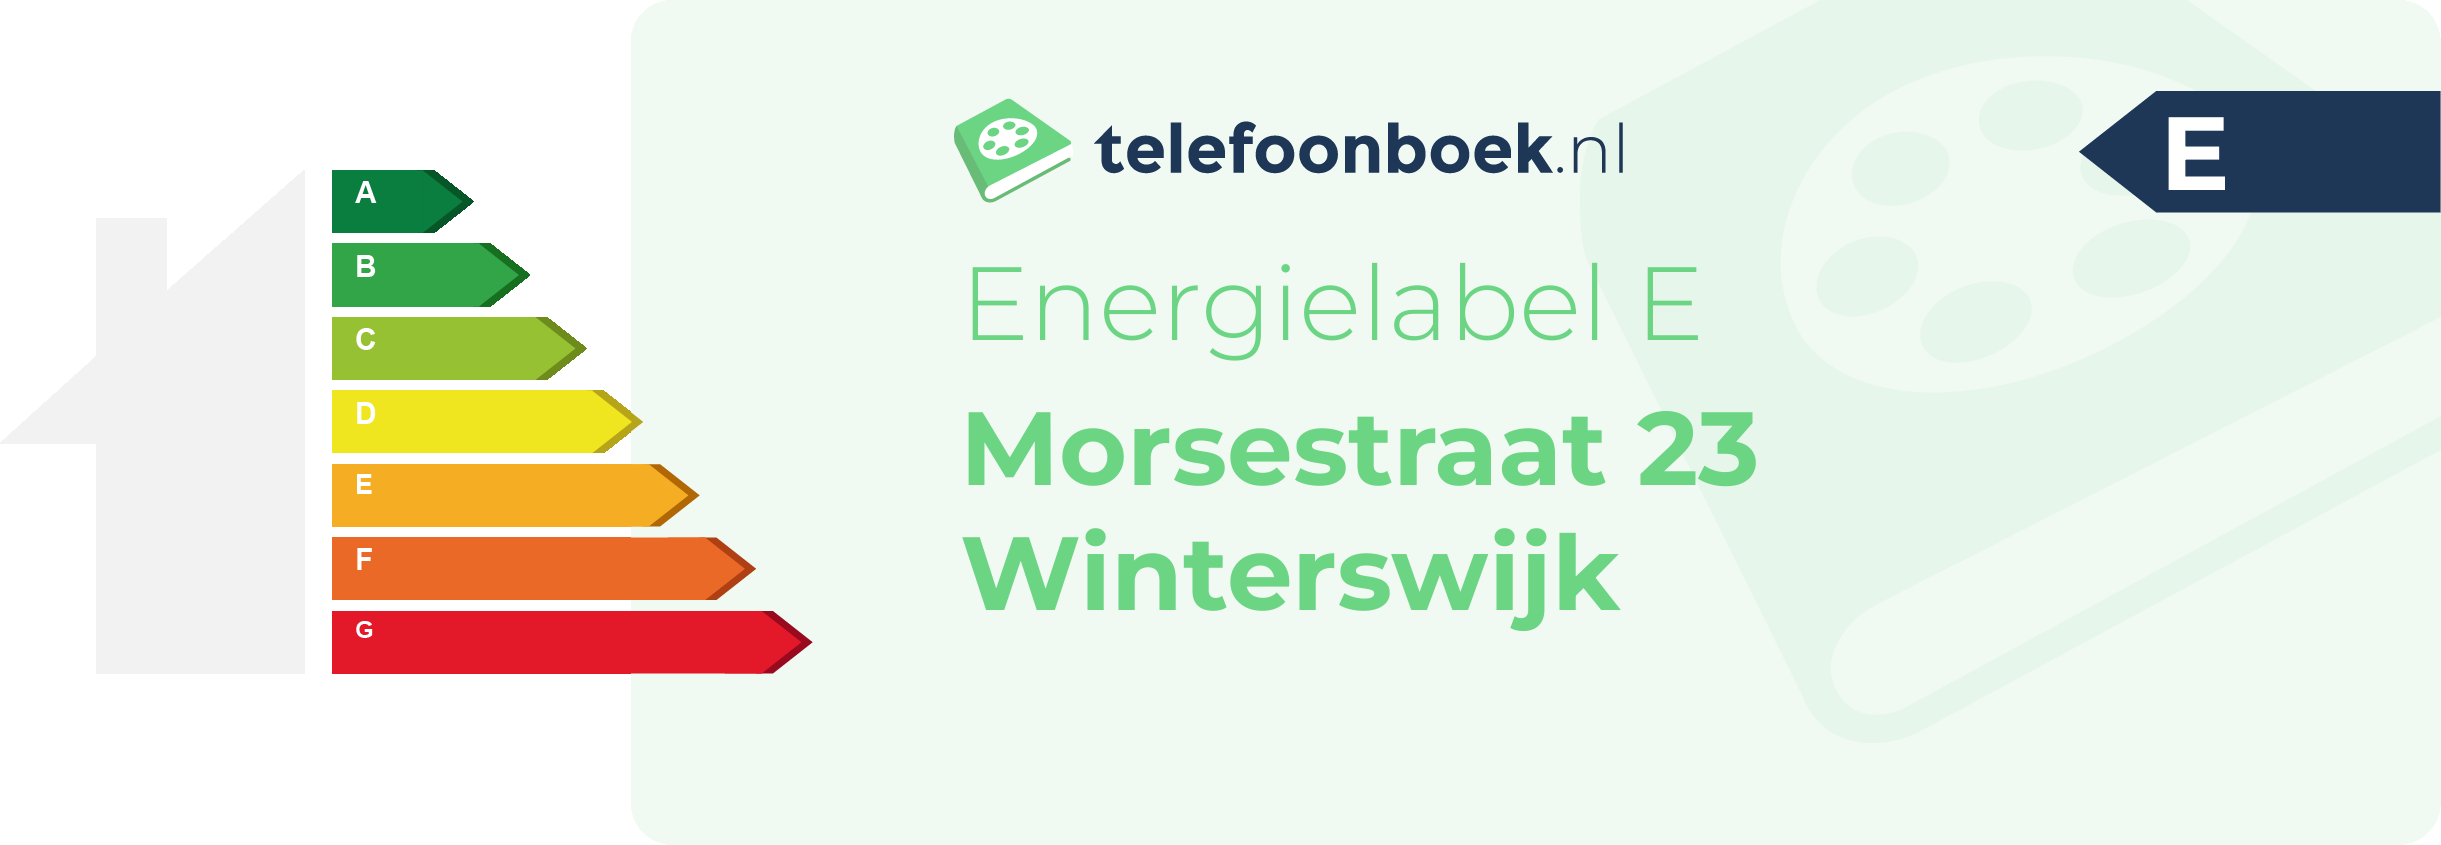 Energielabel Morsestraat 23 Winterswijk